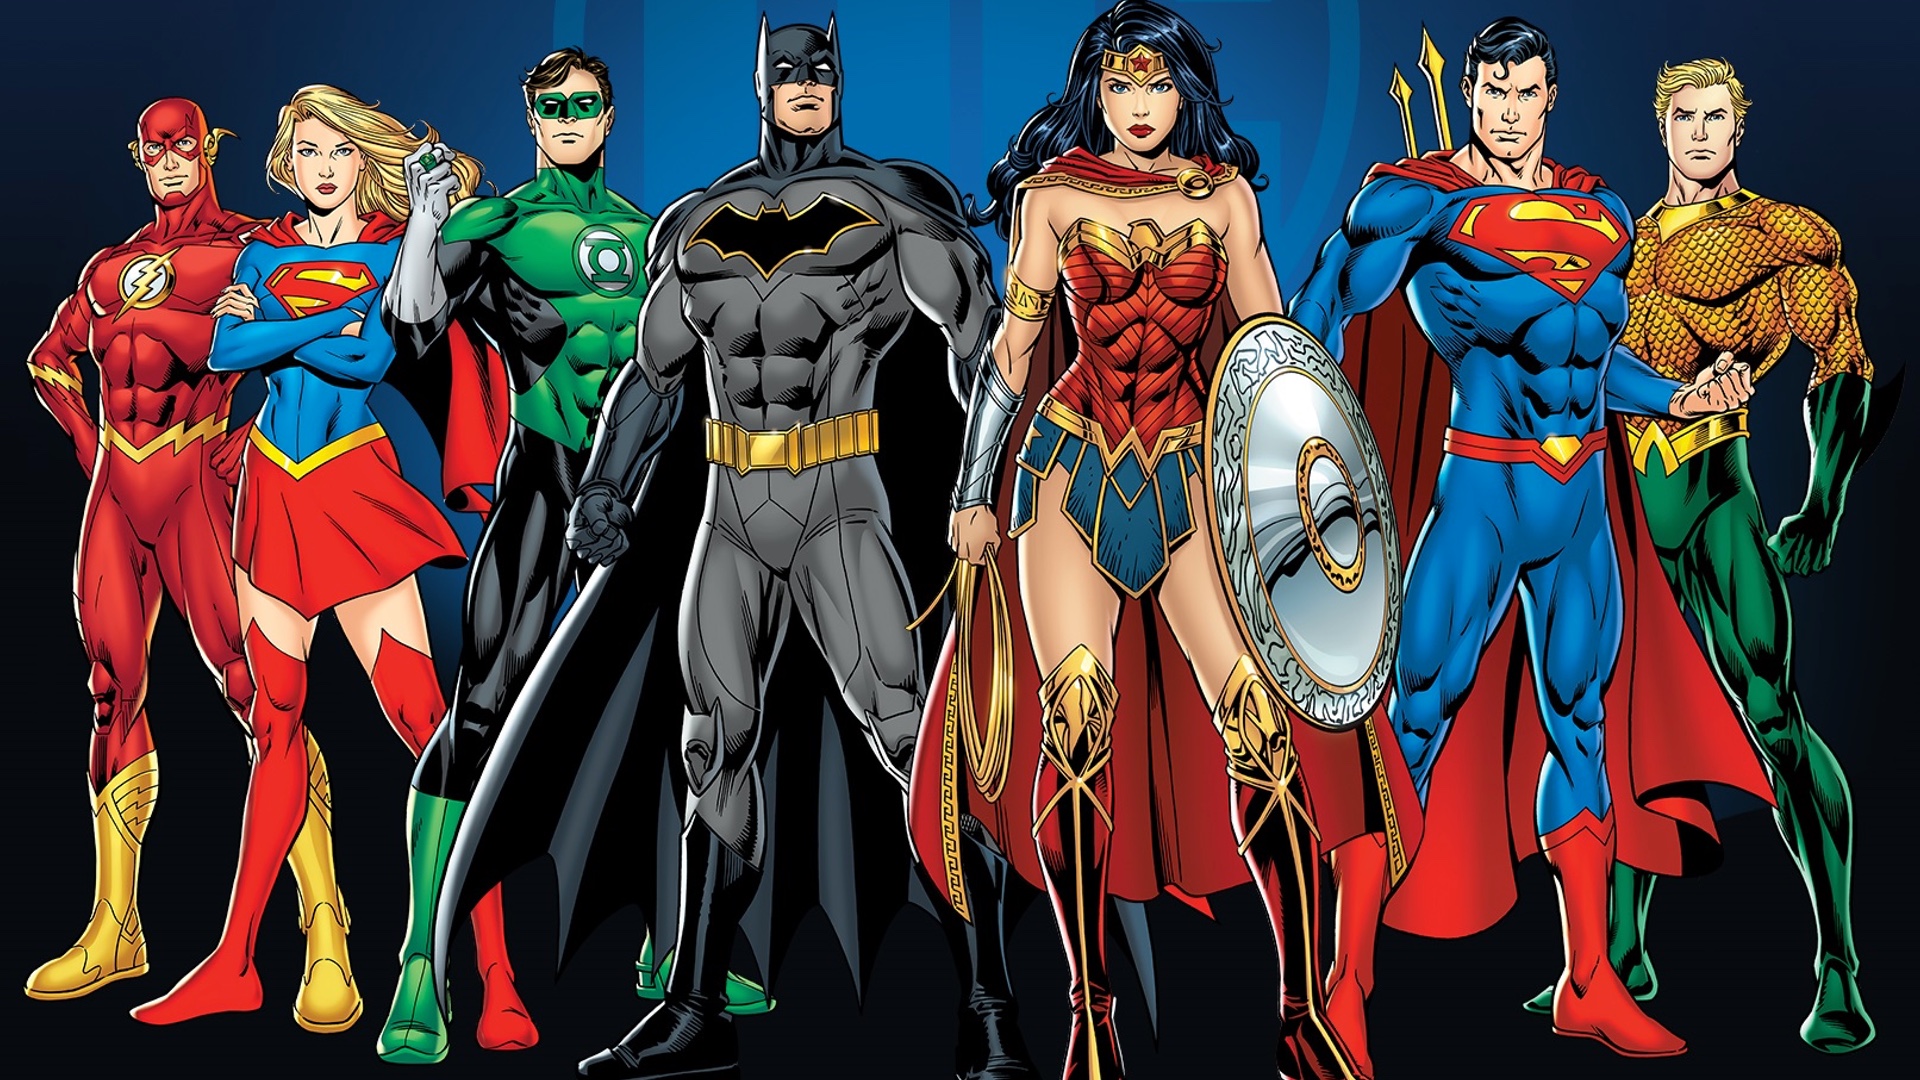 Superhero has. Супермен (расширенная Вселенная DC). Лига справедливости комикс 2022. ДС комикс. Комиксы DC.